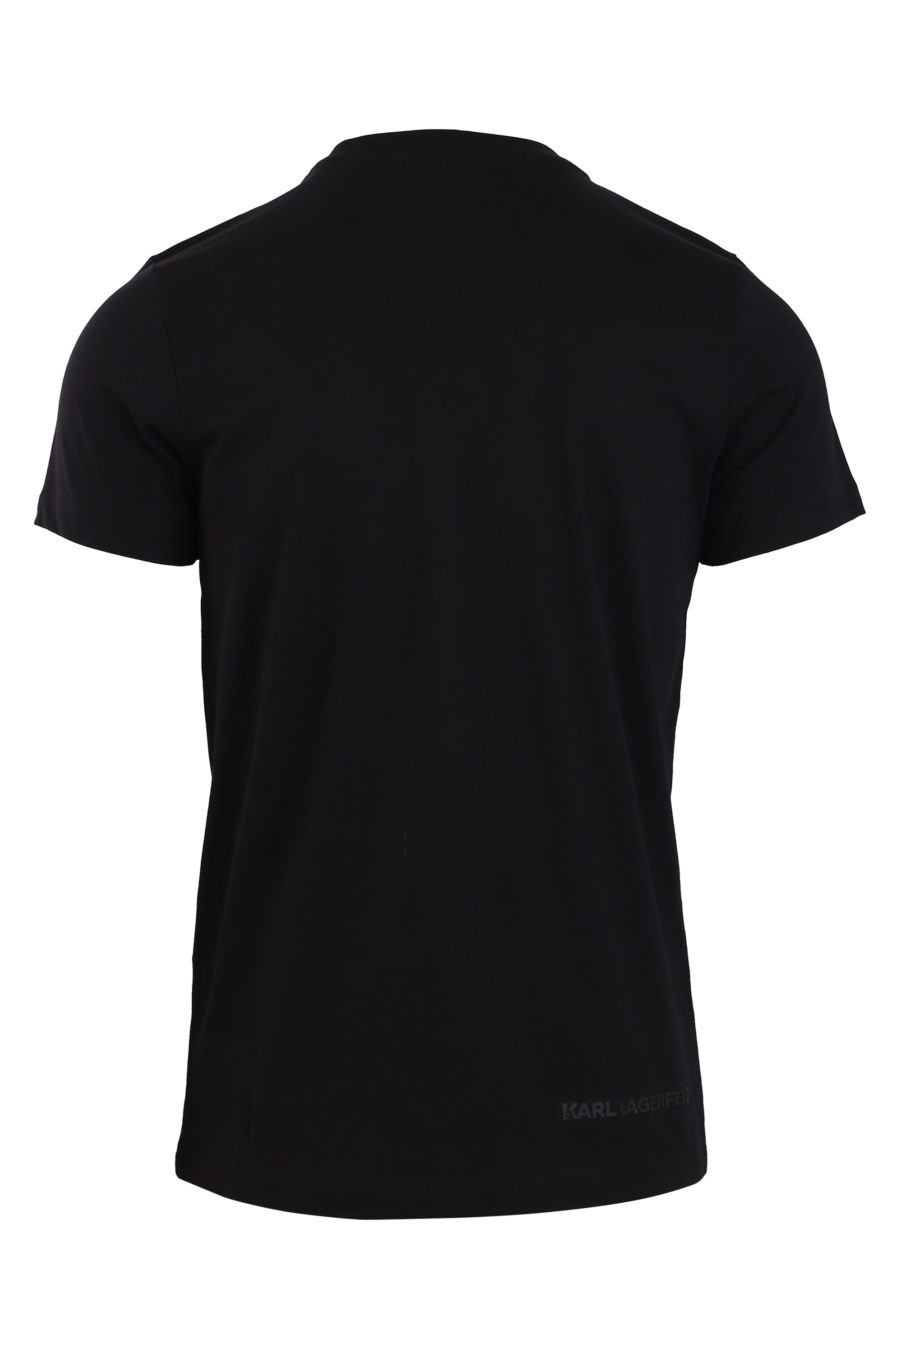 Camiseta negra con maxi logo azul - IMG 0828